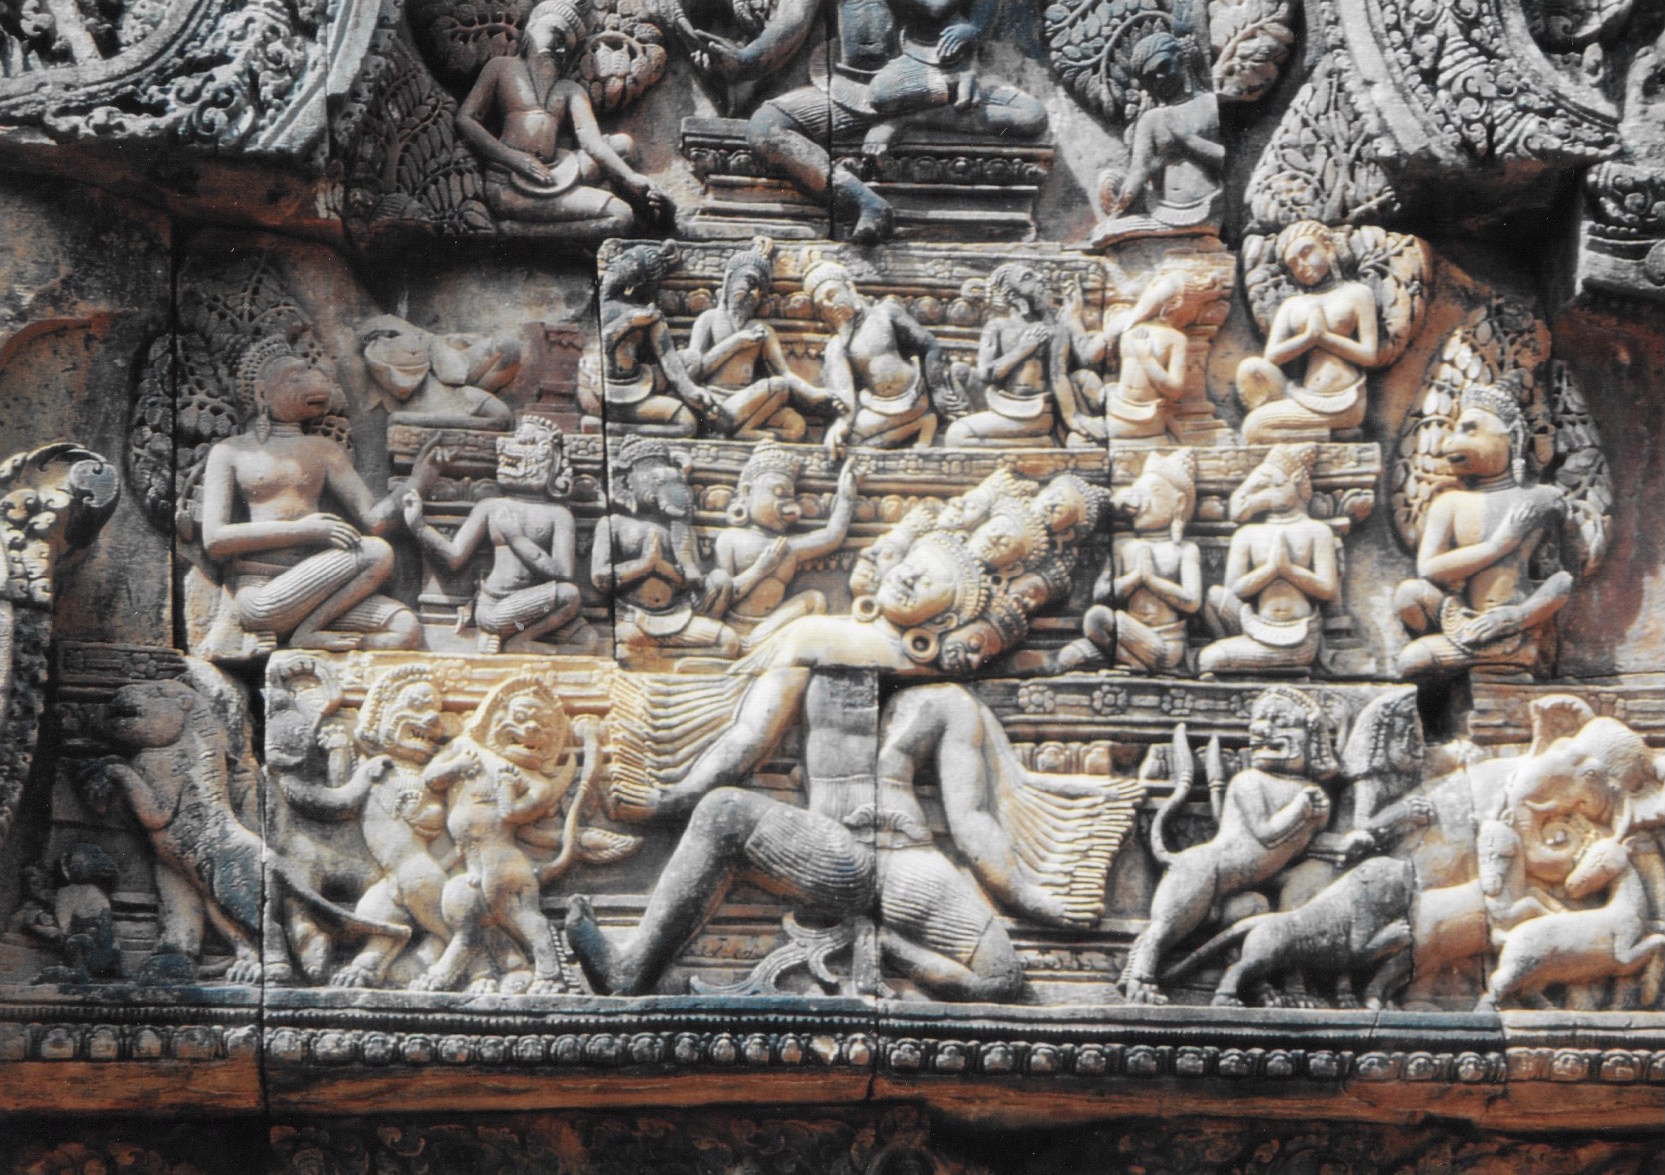 Les sculptures de Banteay Srei atteignent un degré de finesse inégalé à Angkor. Ce sont ces pièces que Malraux entendait revendre illégalement à des collectionneurs avant qu’il ne se fasse arrêter à son retour à Phnom Penh.